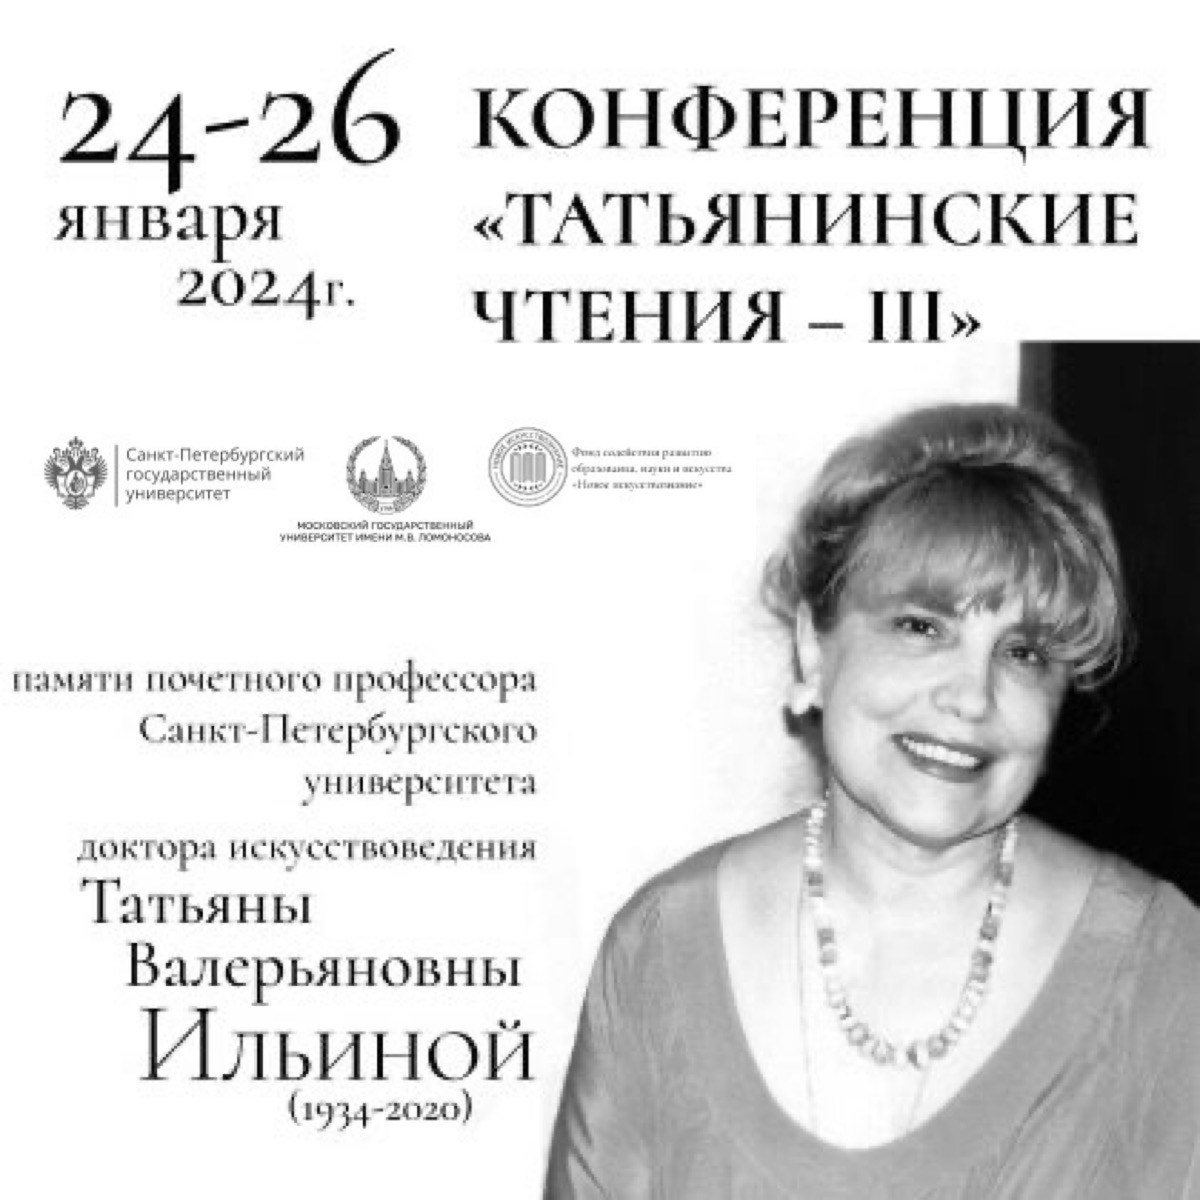 Участие в конференции "Татьянинские чтения – III"